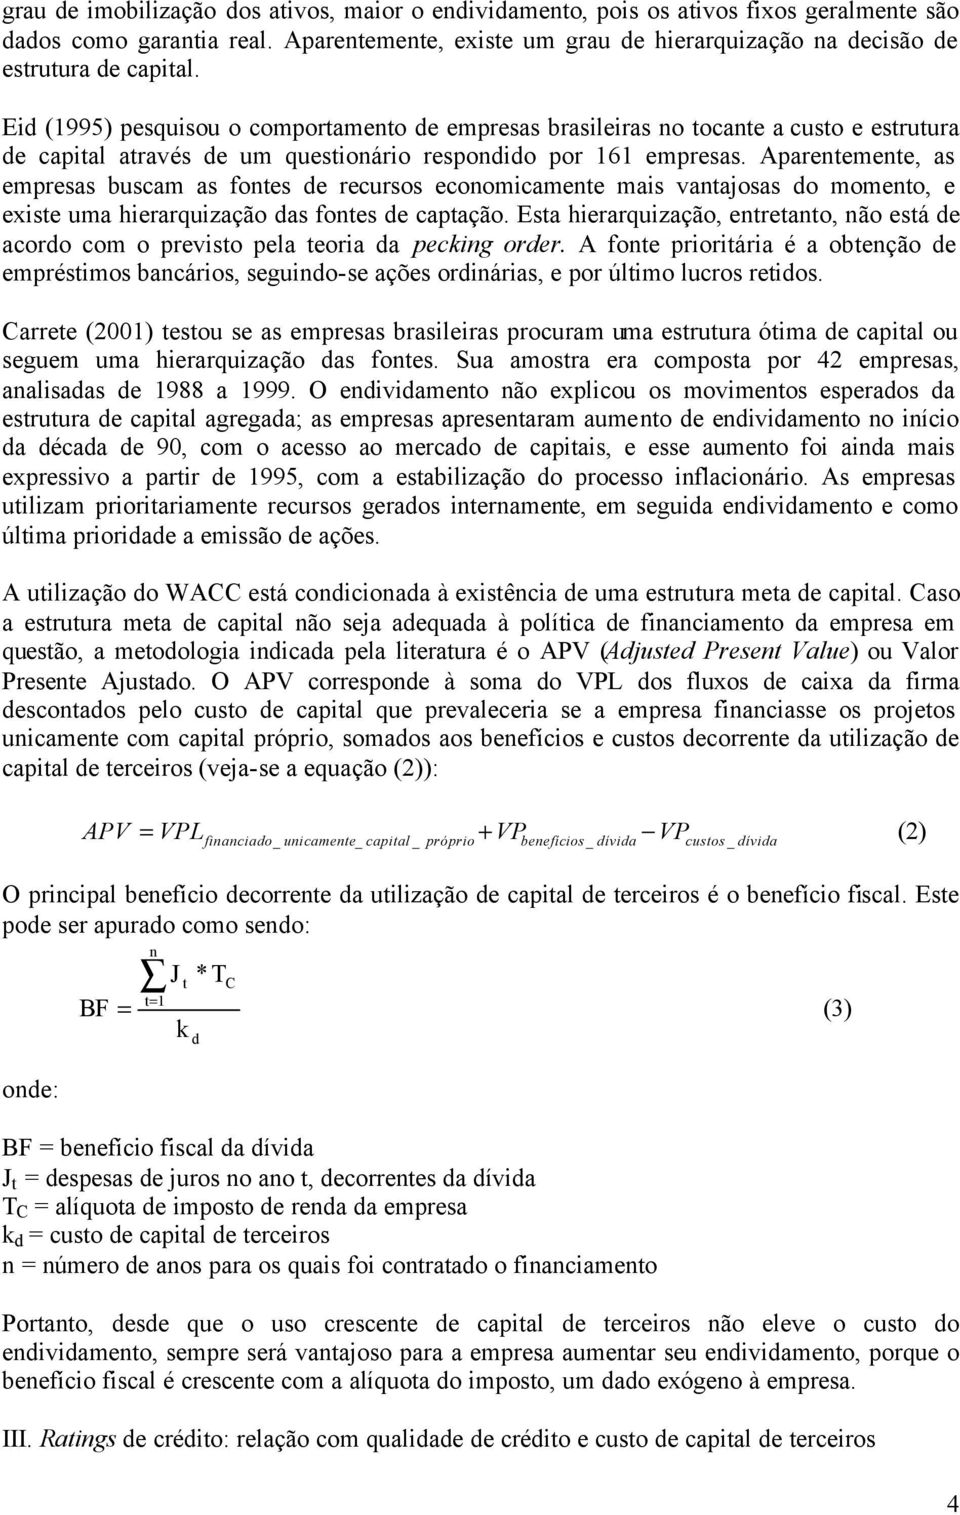 Eid (1995) pesquisou o comportamento de empresas brasileiras no tocante a custo e estrutura de capital através de um questionário respondido por 161 empresas.